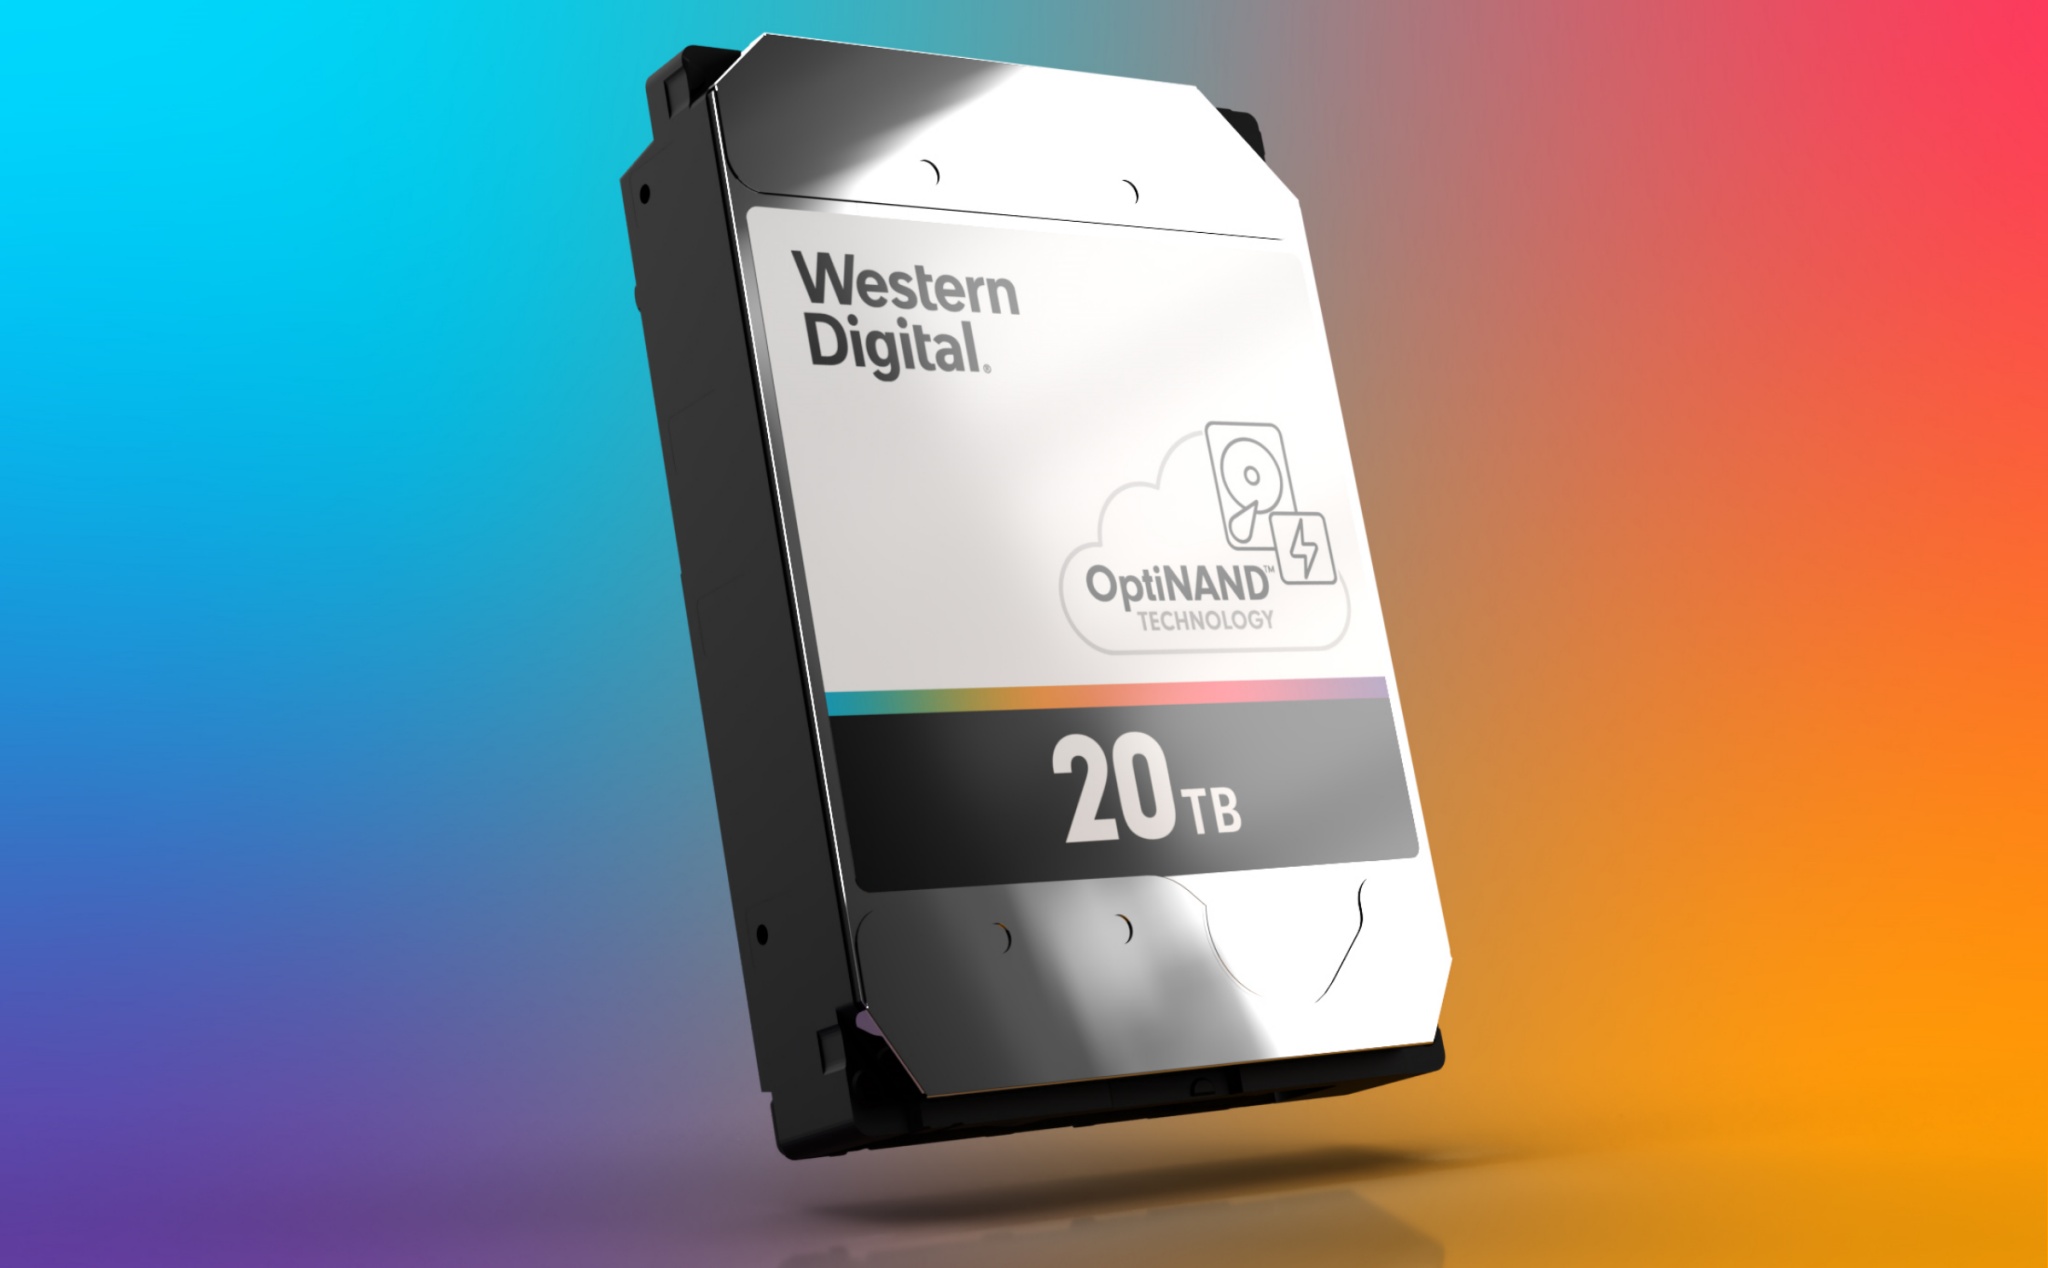 WD ra mắt ổ 20 TB dùng công nghệ OptiNAND cải thiện tốc độ truy xuất ngẫu nhiên